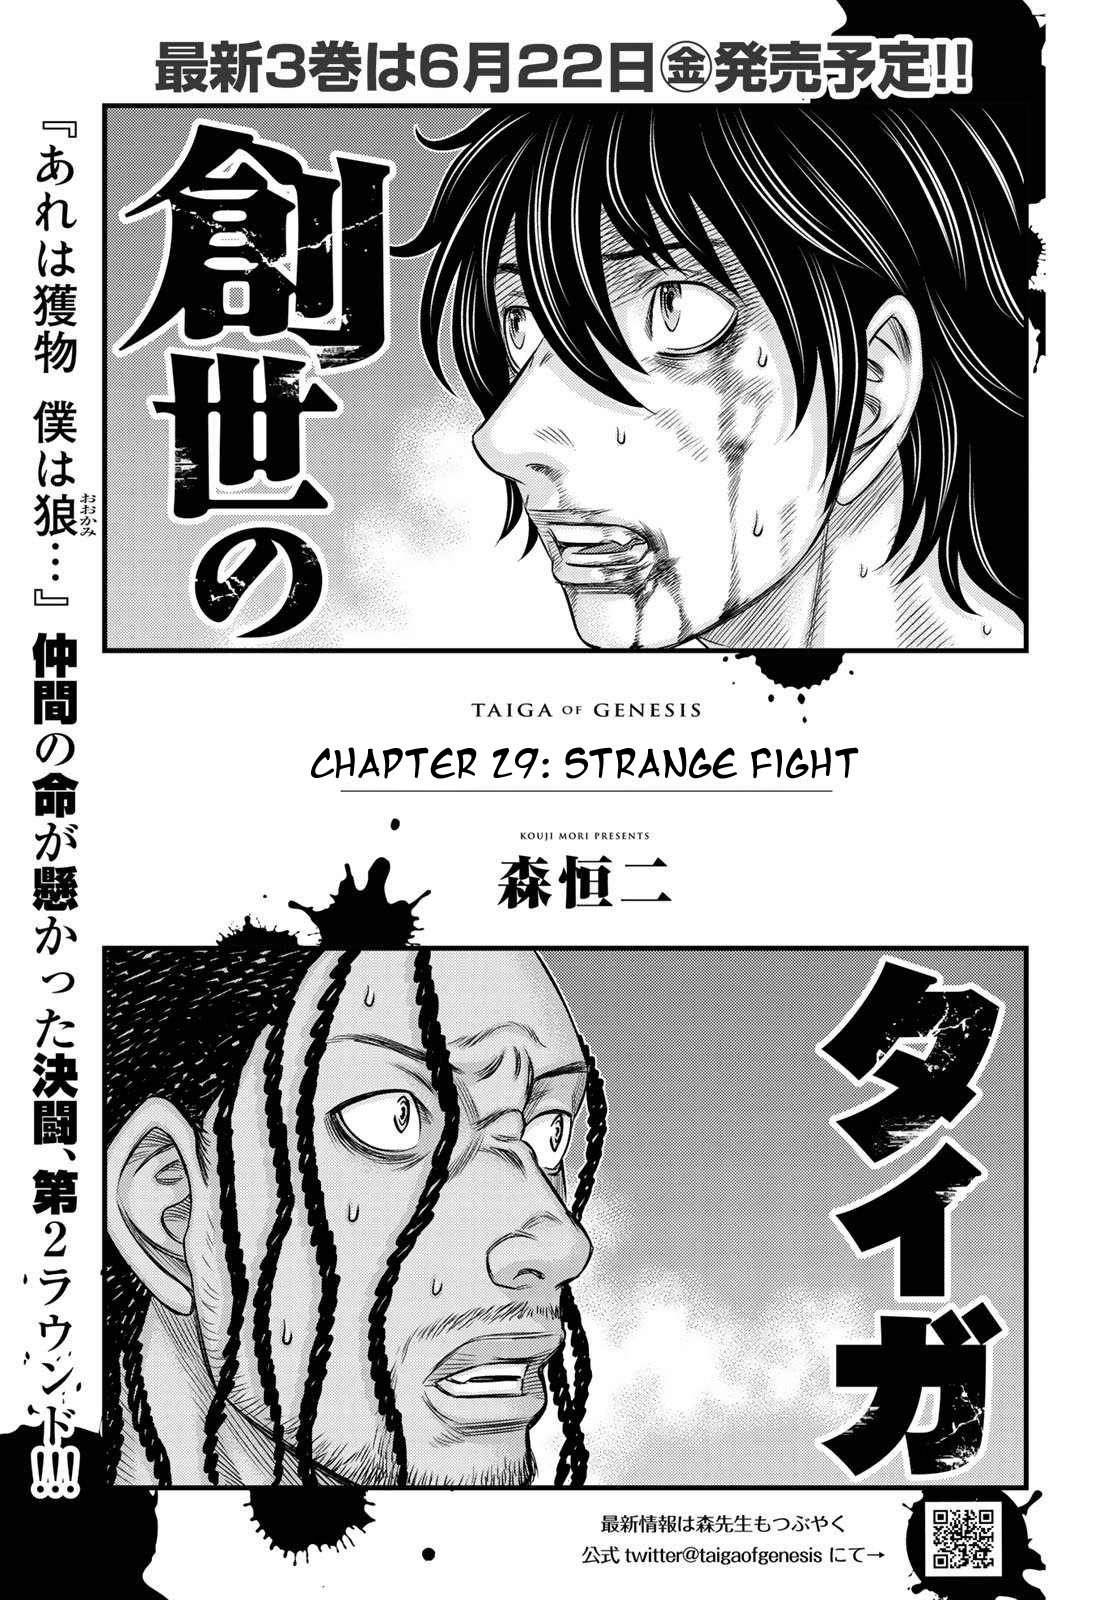 Sousei no Taiga Vol. 4 Ch. 29 Strange Fight